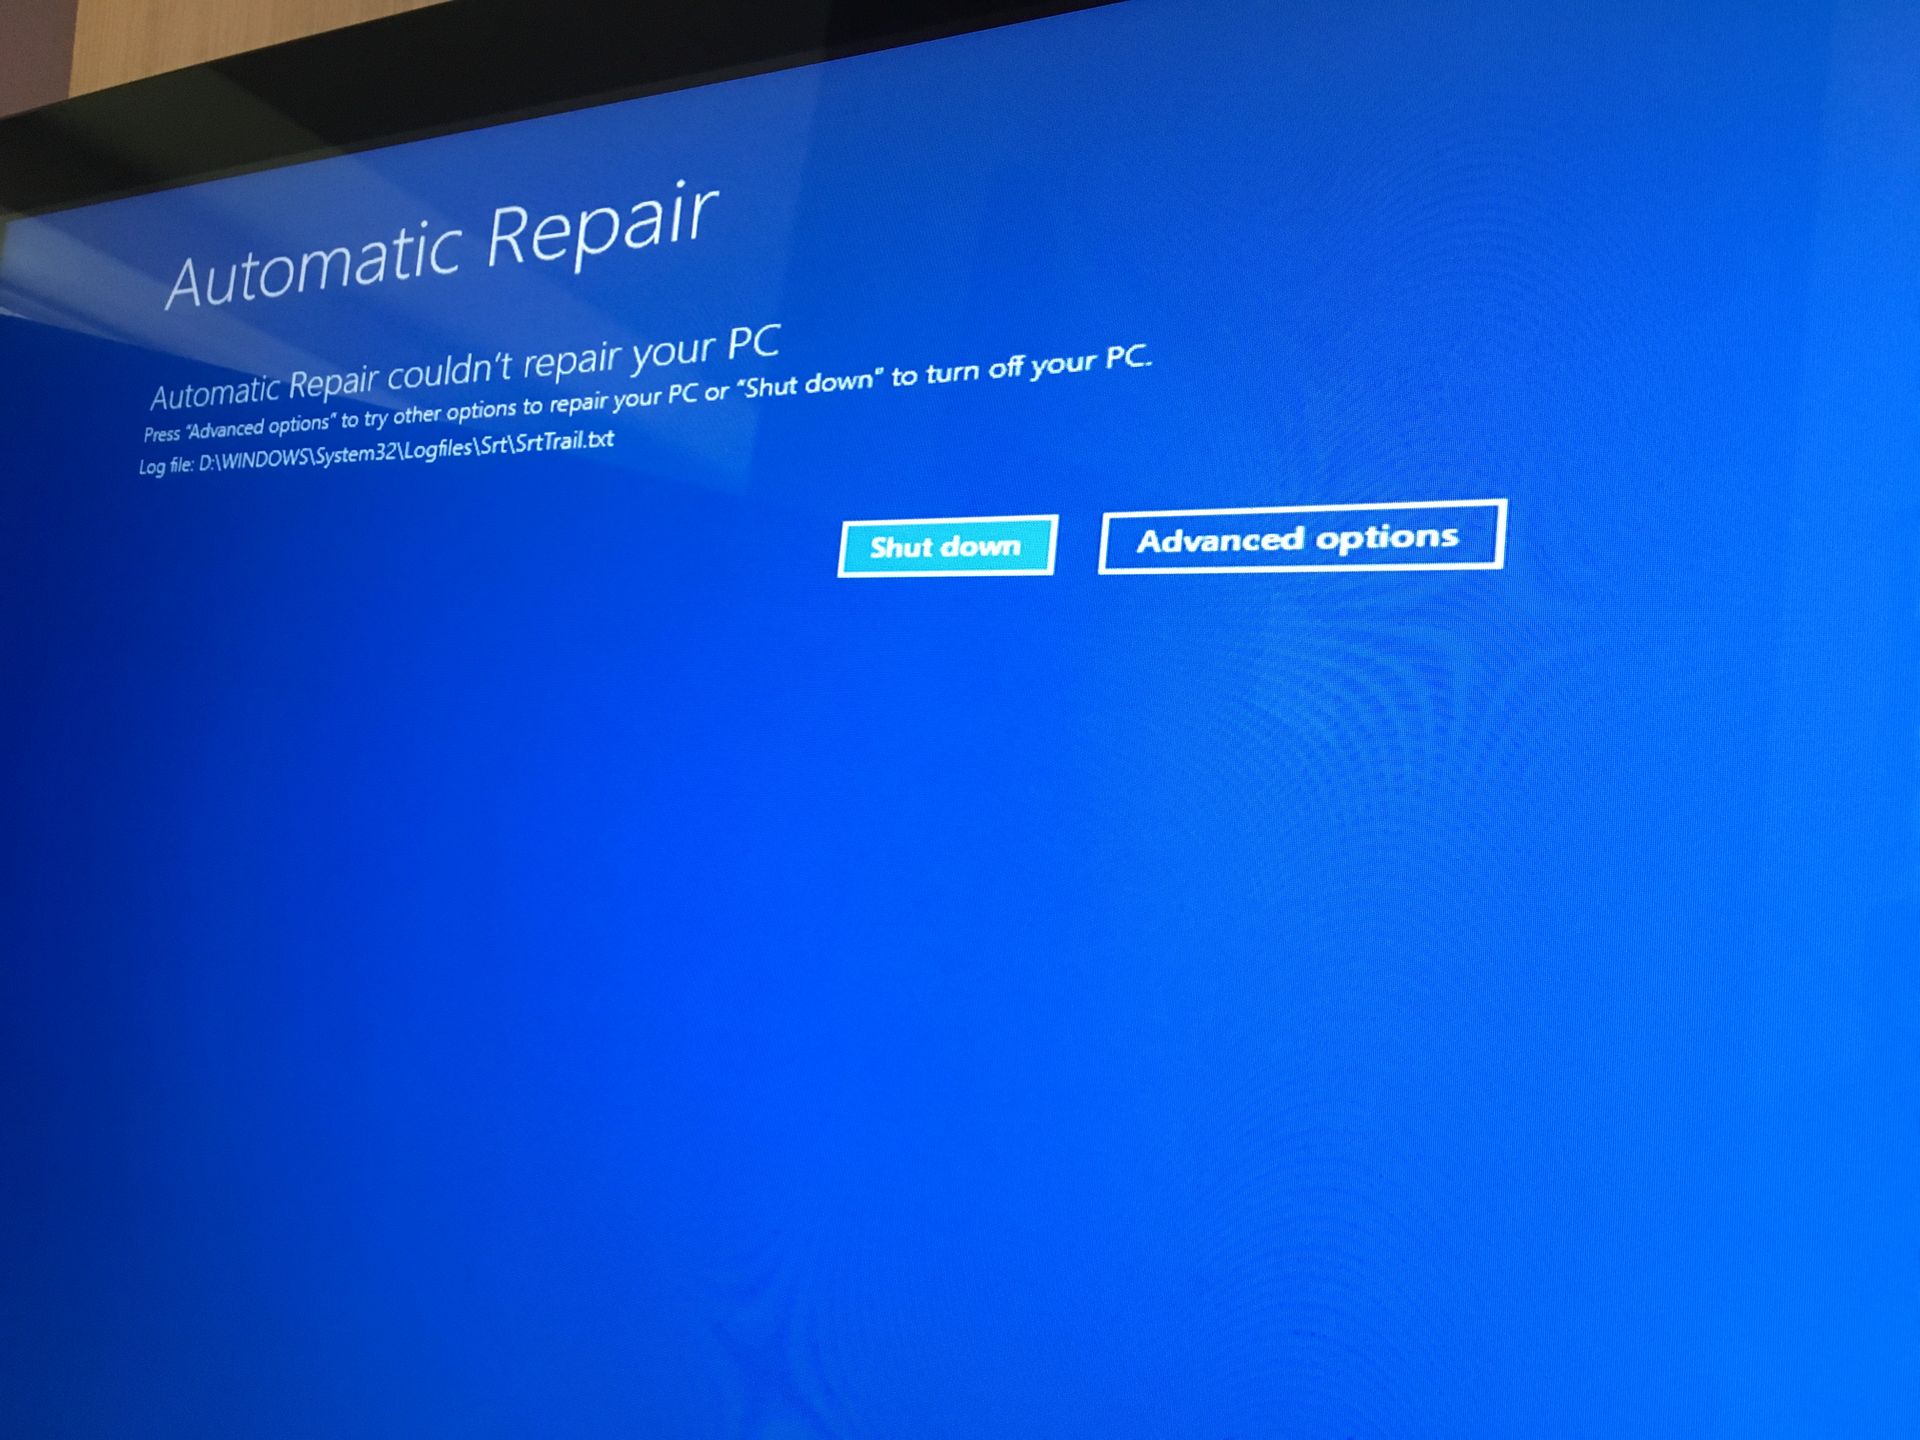 Automatic repair windows. Preparing Automatic Repair. Prepare Automatic Repair Windows 10. Preparing Automatic Repair Windows.